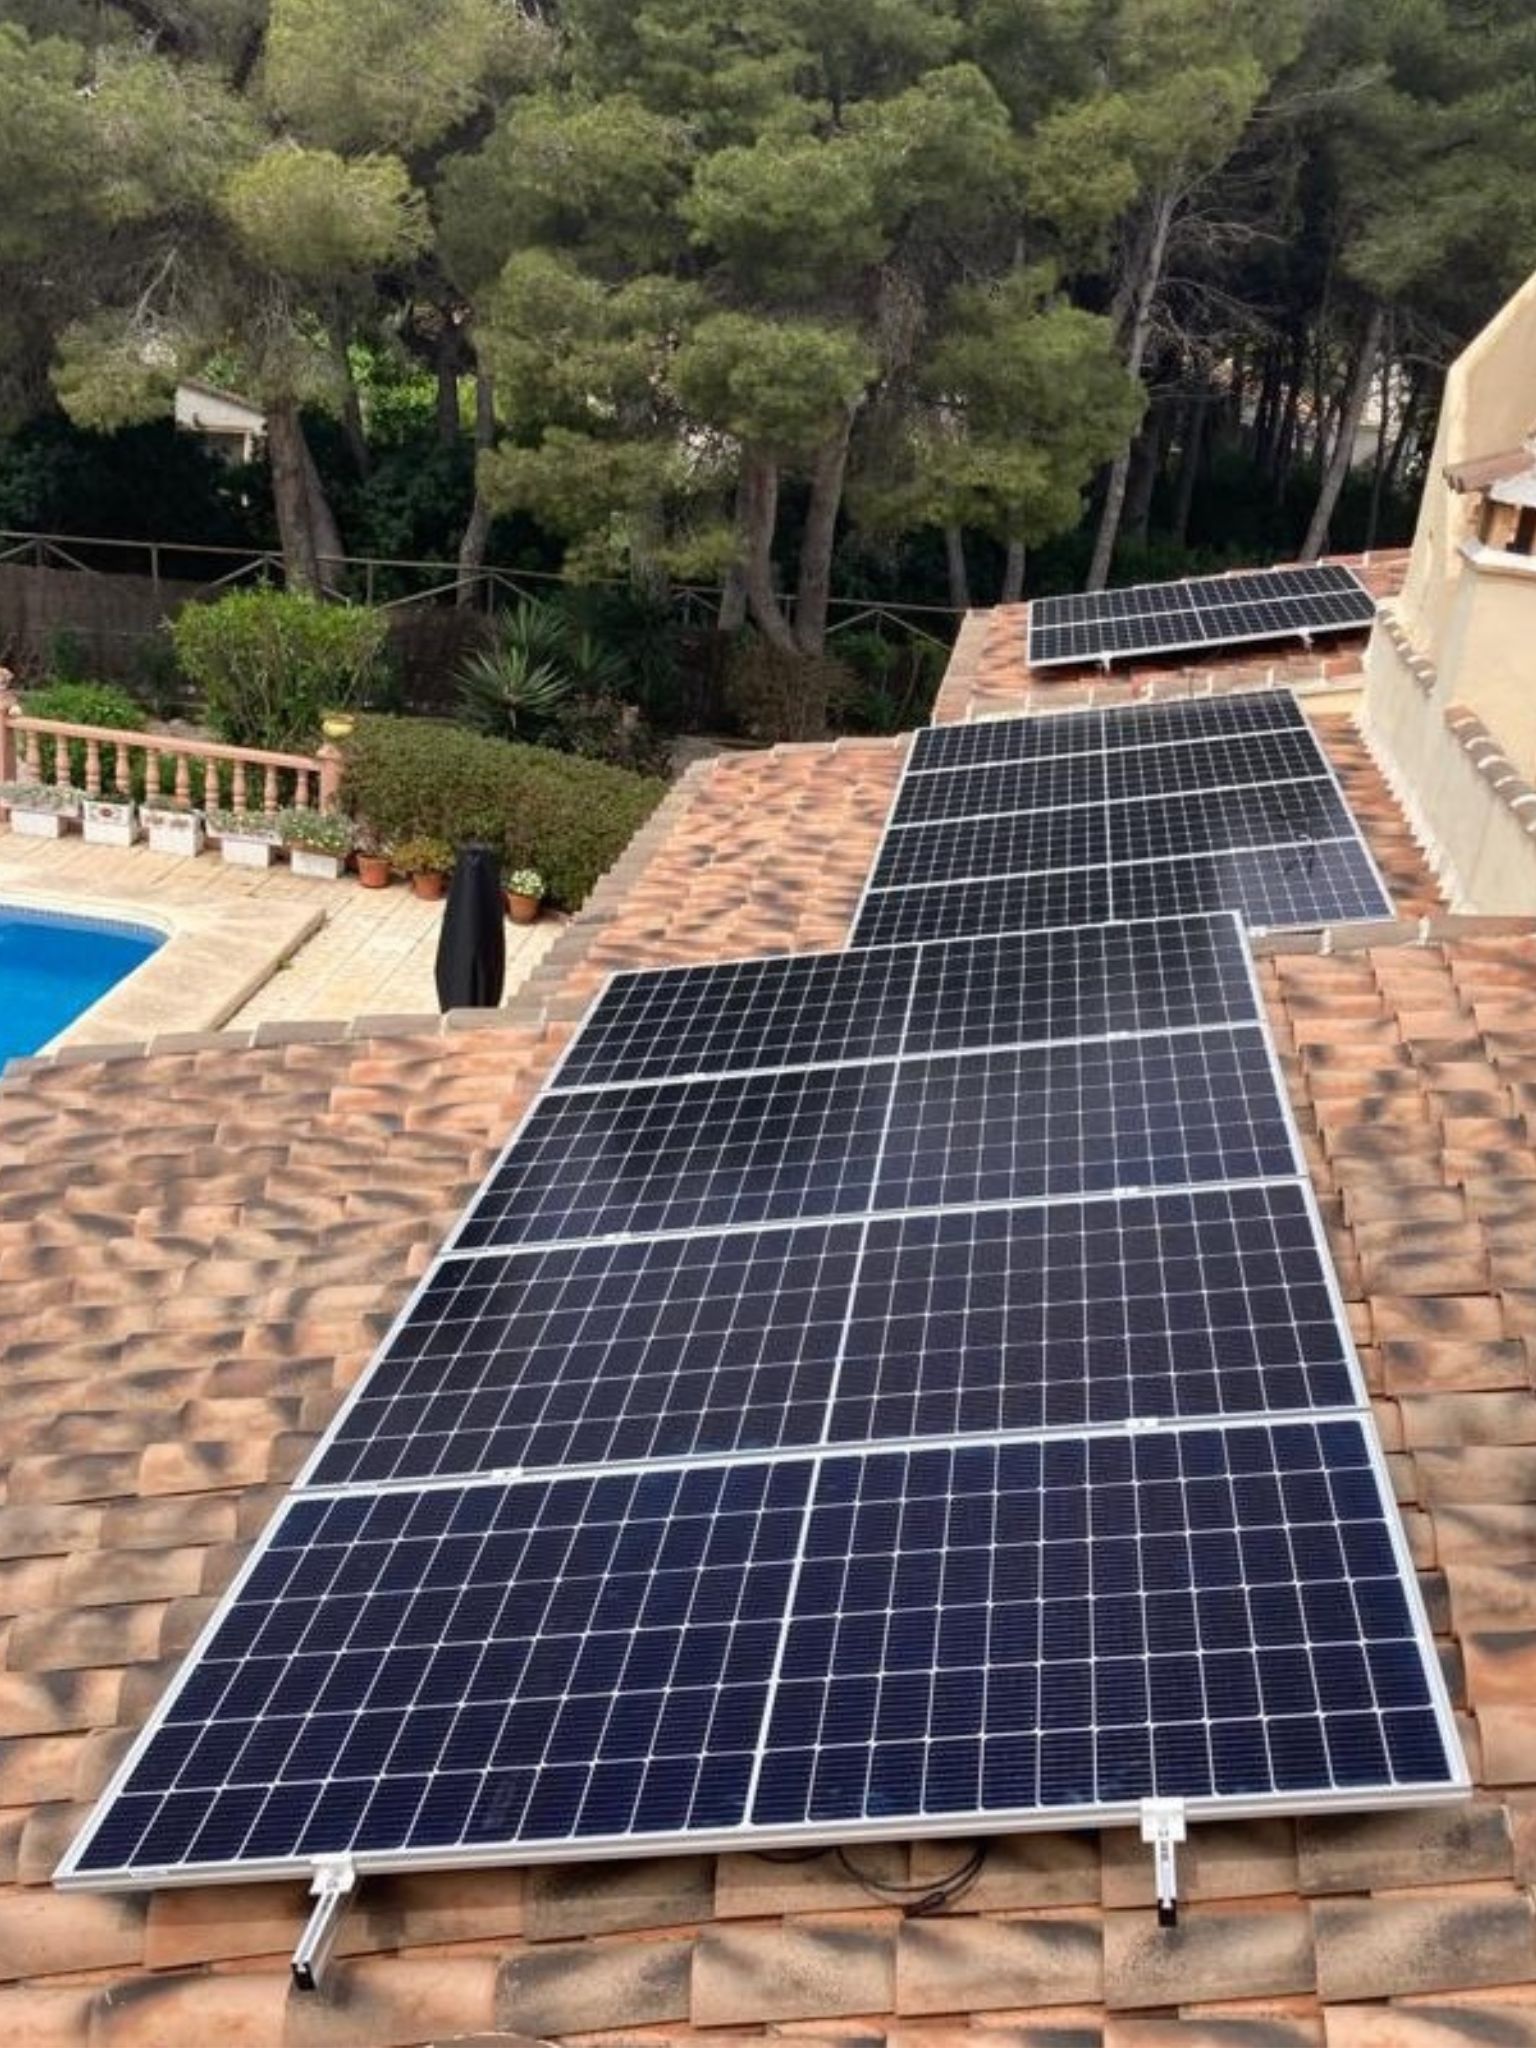 Instala placas solares en el tejado de tu casa